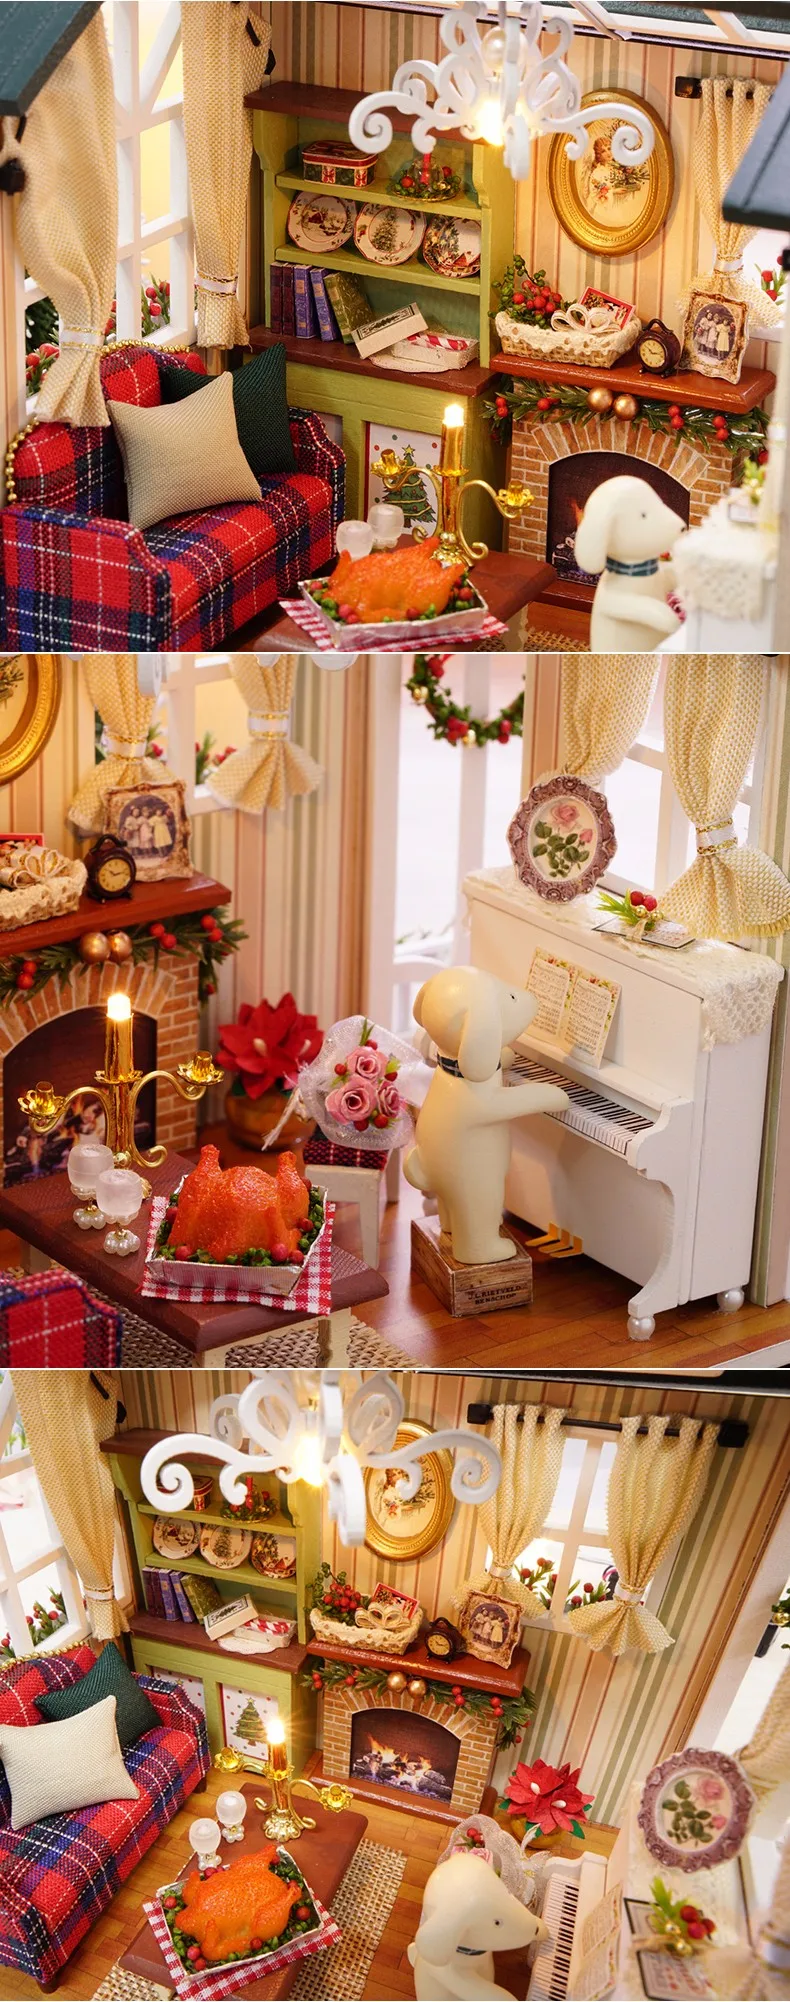 Мебель ручной работы кукольный дом Diy миниатюрный дом 3D Деревянный миниатюрный кукольный домик игрушки рождественский дом и подарок на день рождения z009